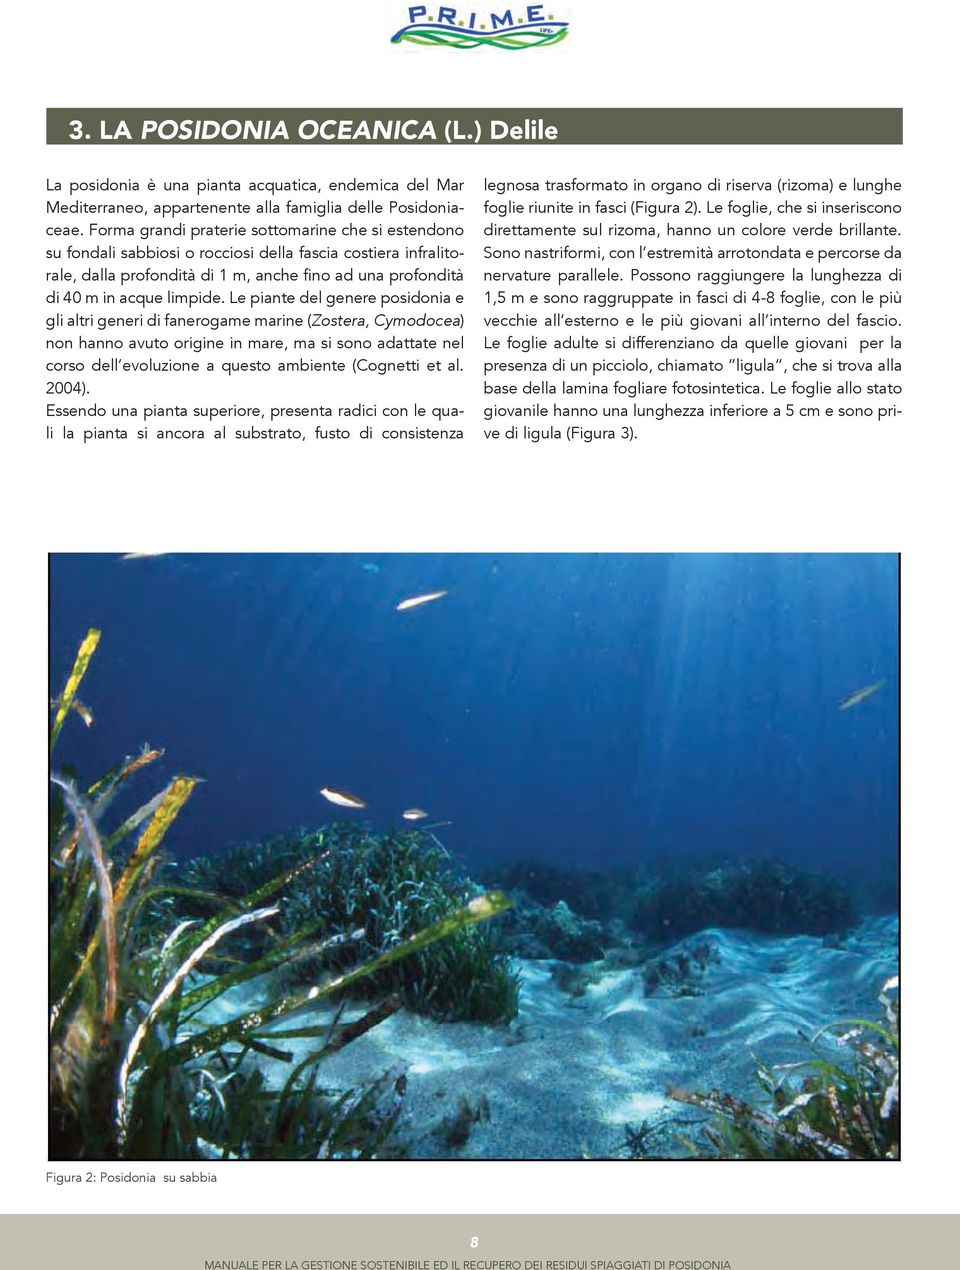 Le piante del genere posidonia e gli altri generi di fanerogame marine (Zostera, Cymodocea) non hanno avuto origine in mare, ma si sono adattate nel corso dell evoluzione a questo ambiente (Cognetti